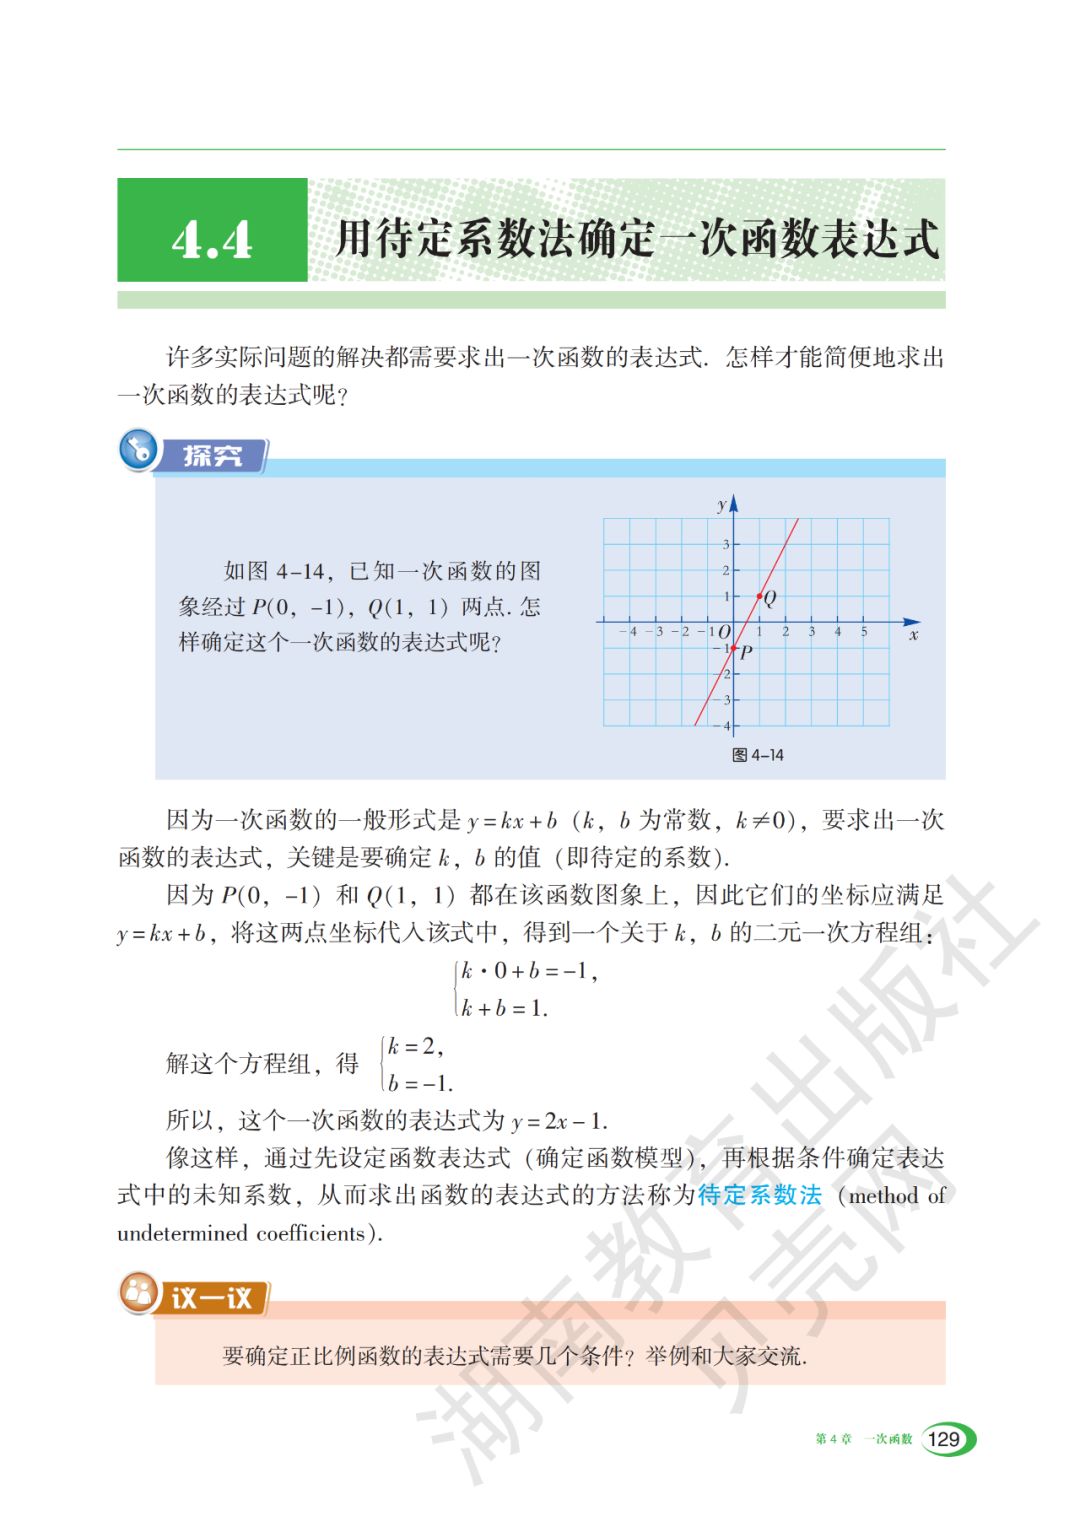 4 4 用待定系数法确定一次函数表达式 Page129 湘教版八年级数学下册